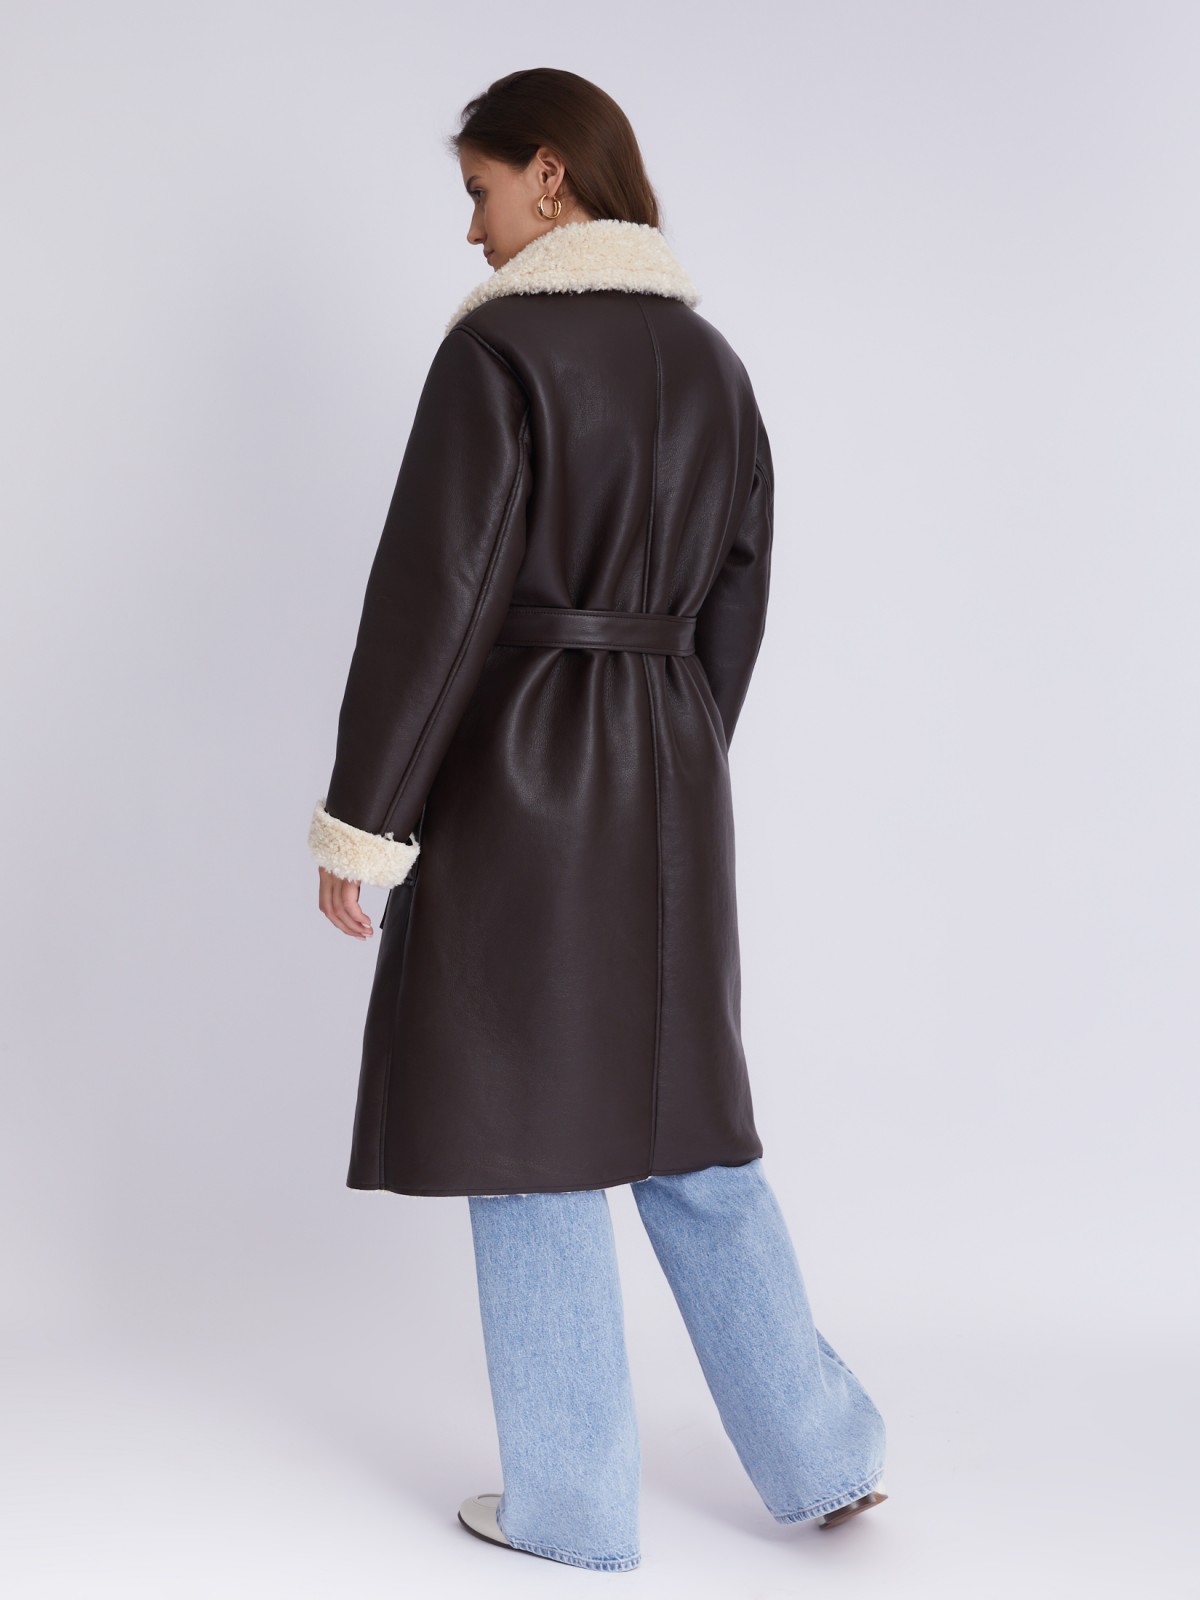 Длинное тёплое пальто-дублёнка из экокожи с искусственным мехом по подкладке и с поясом zolla 023335507074, цвет коричневый, размер S - фото 6